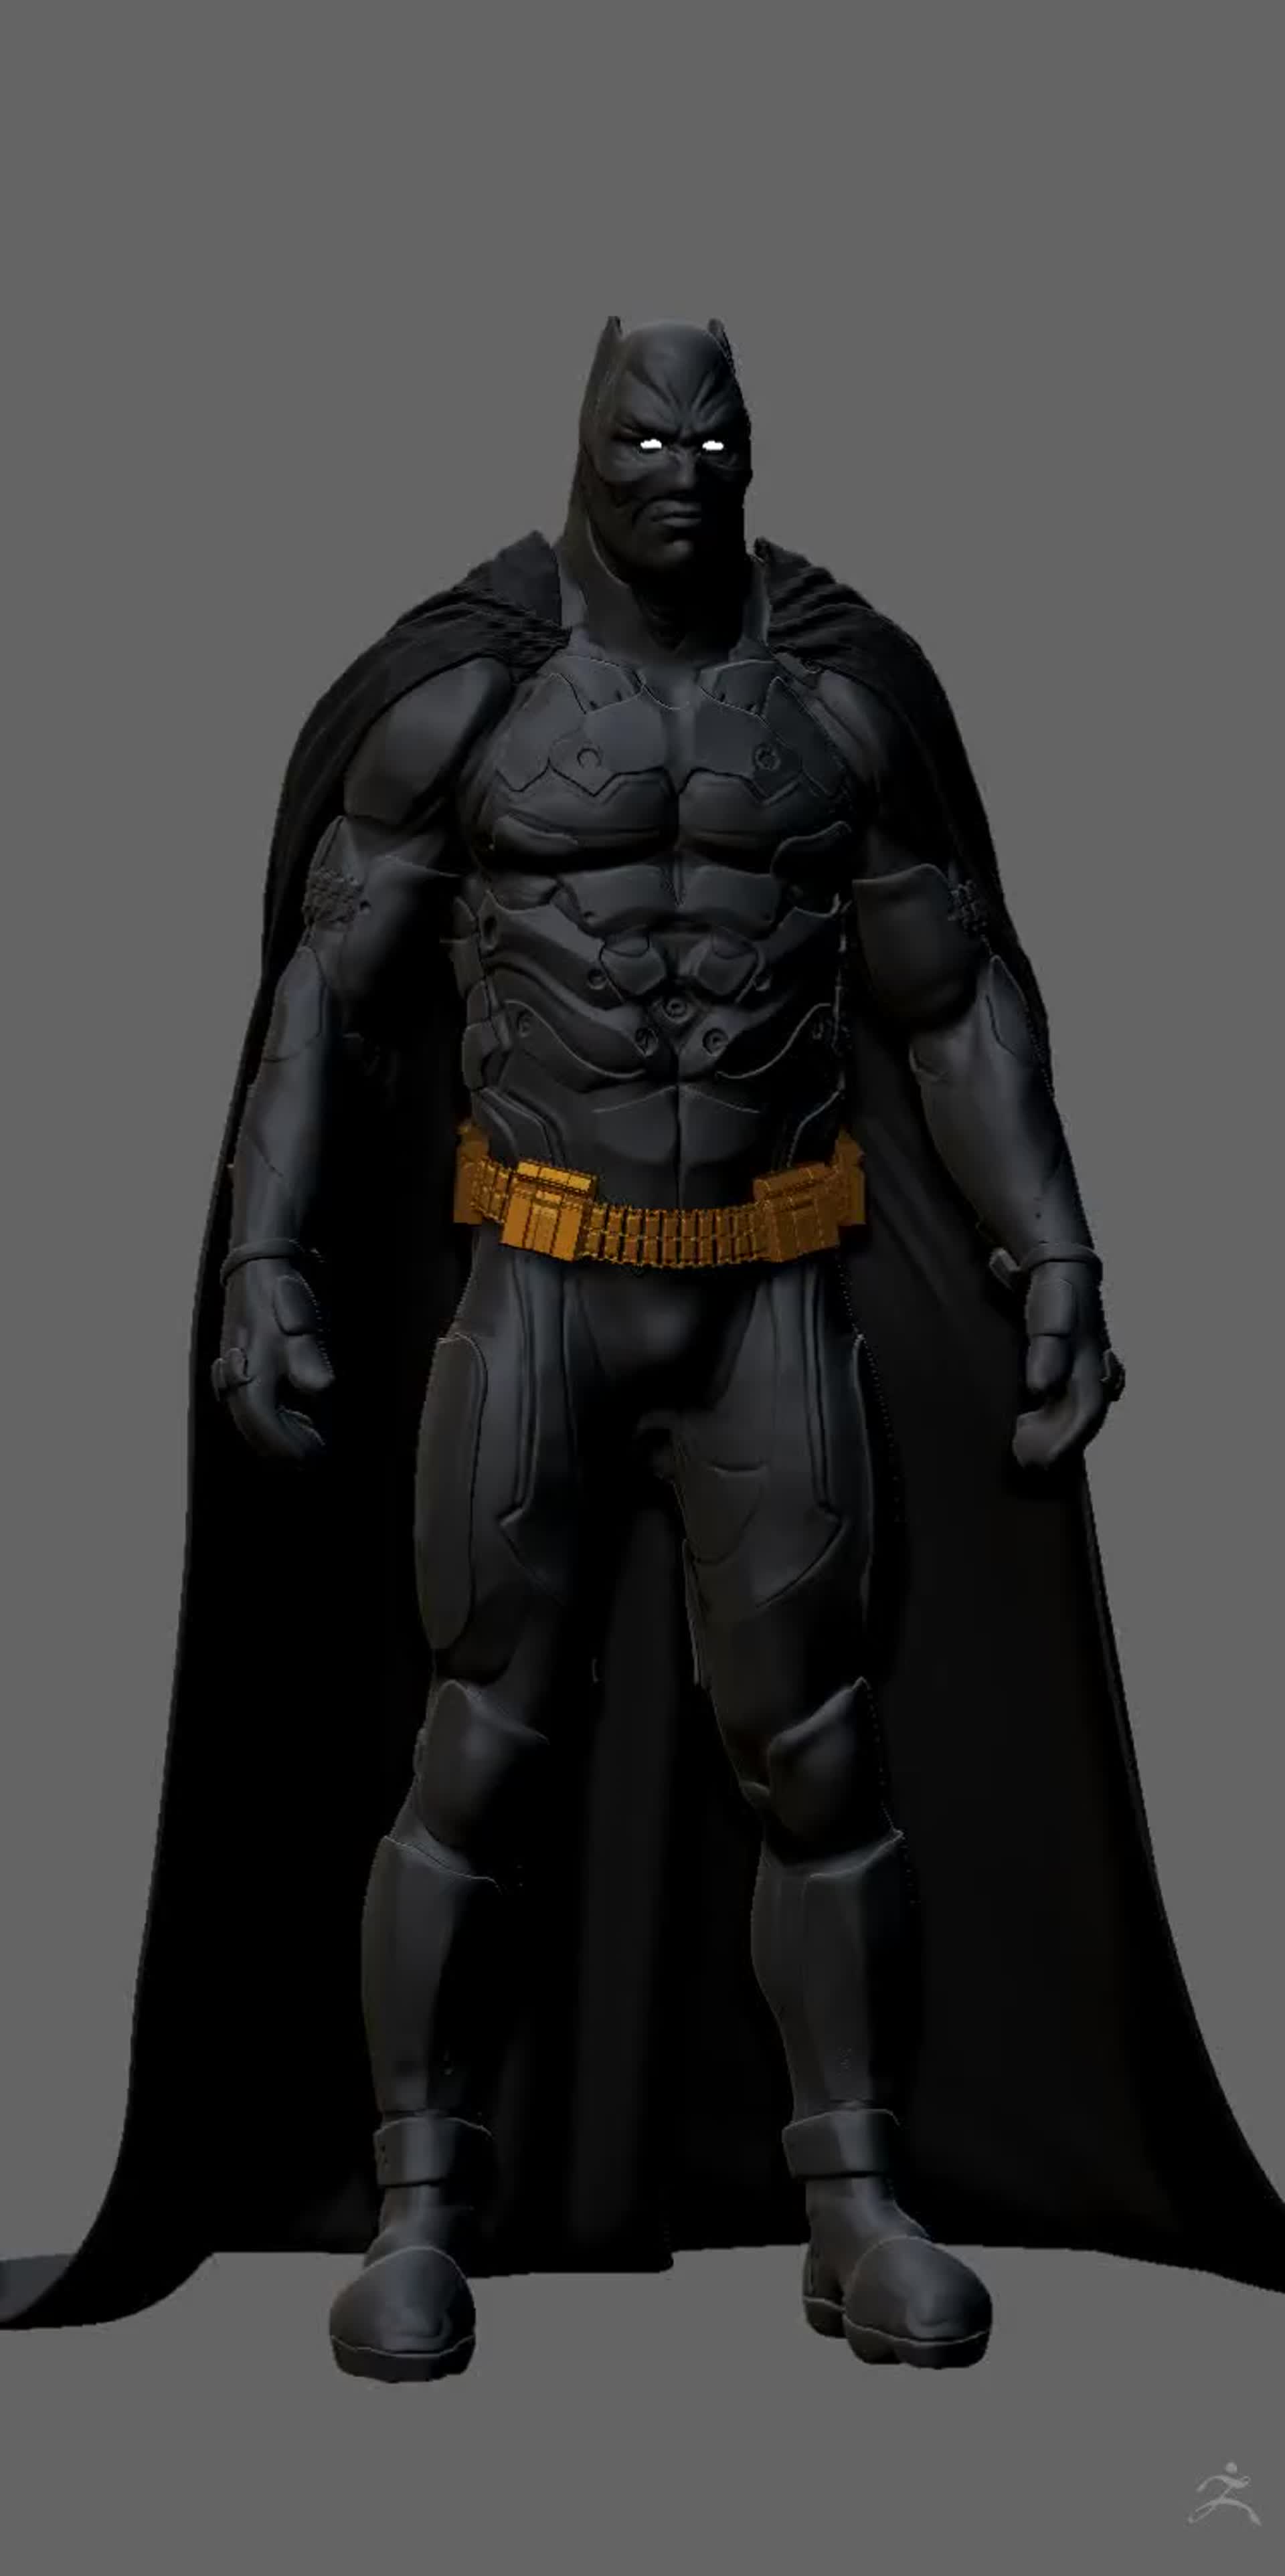 ArtStation - Batman suit design